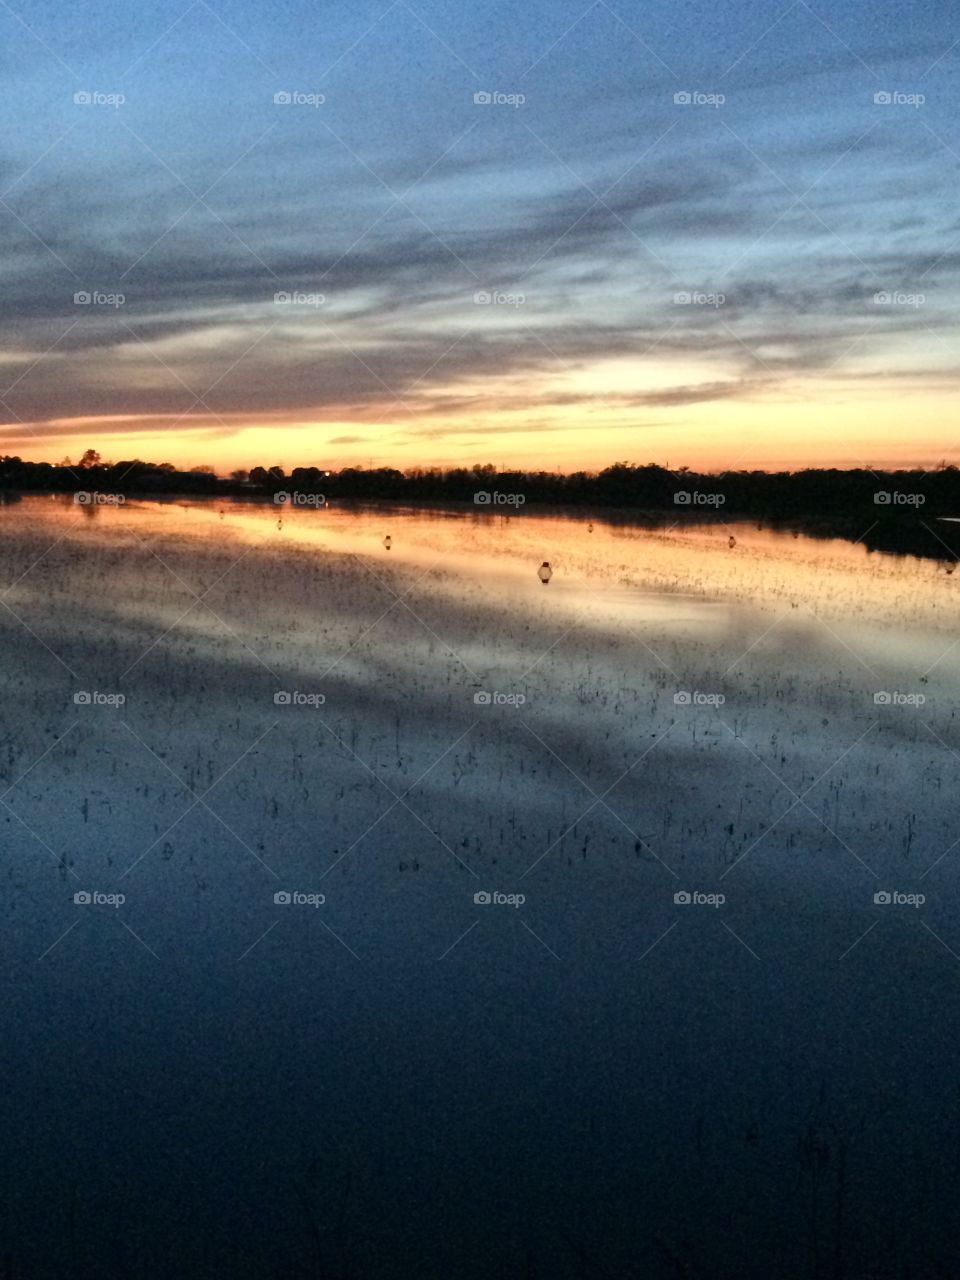 Colorful morning sunrise over crawfish pond